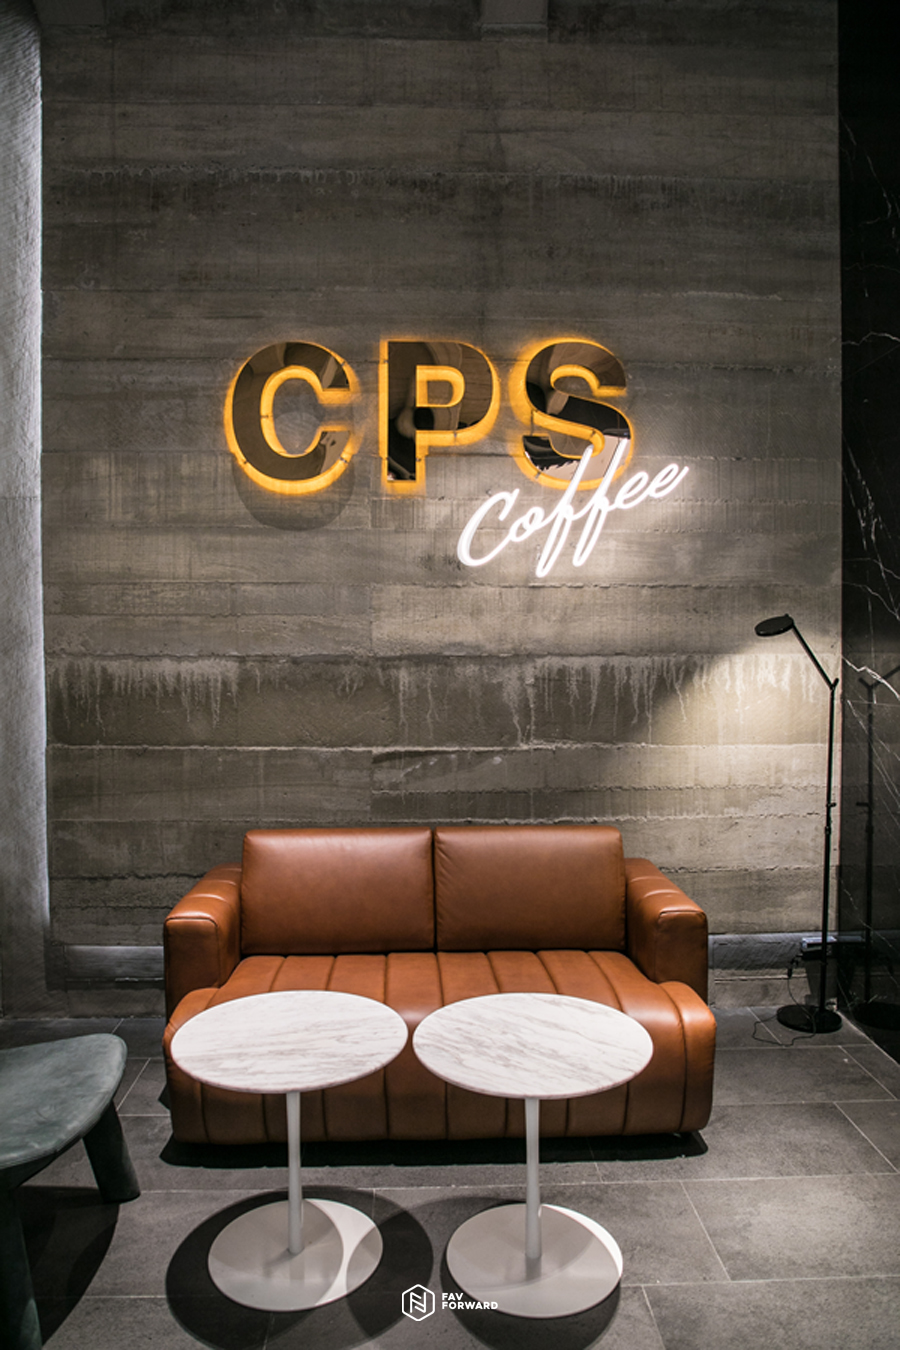 CPS Coffee, CPS CHAPS, คาเฟ่เปิดใหม่, ไอคอนสยาม, iconsiam, เที่ยวคลองสาน, เที่ยว 